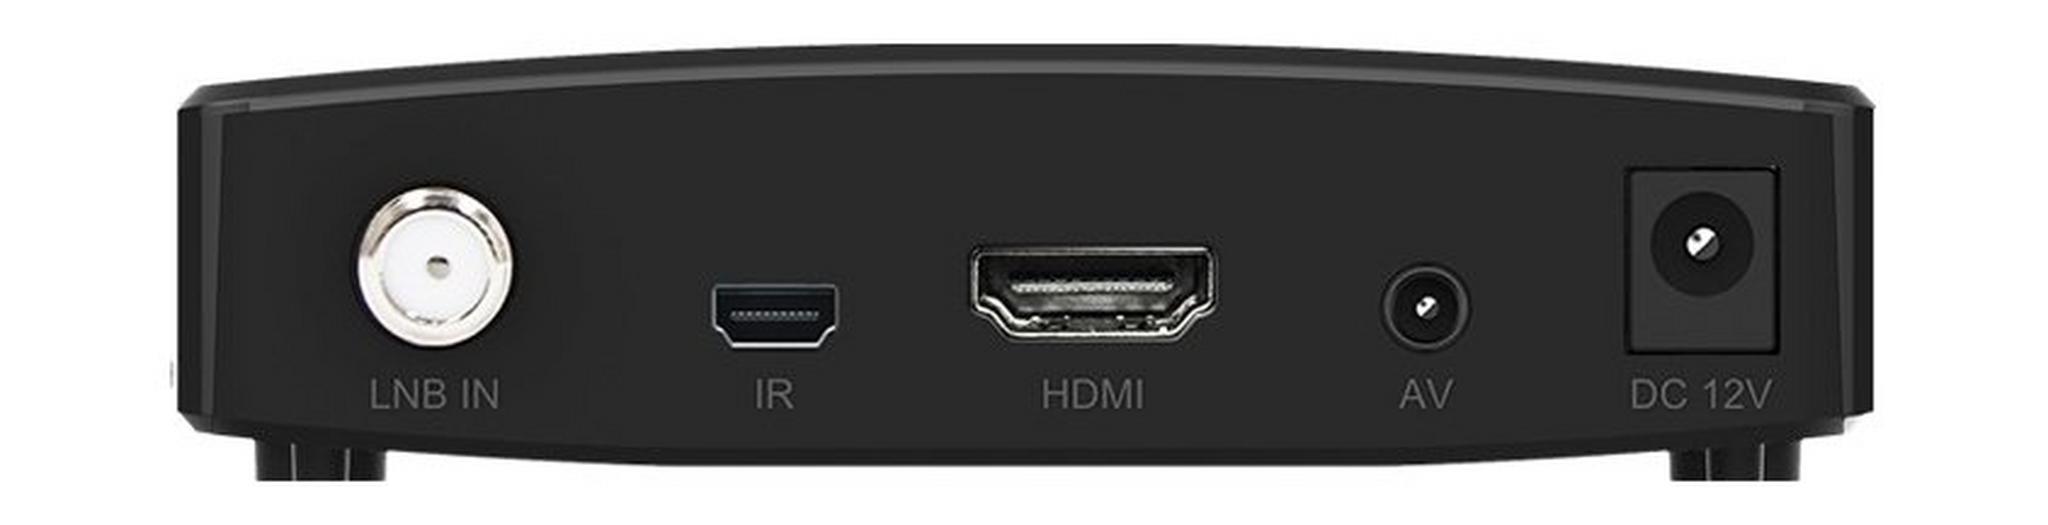 Humax F1-Mini Plus HD Digital Satellite Receiver